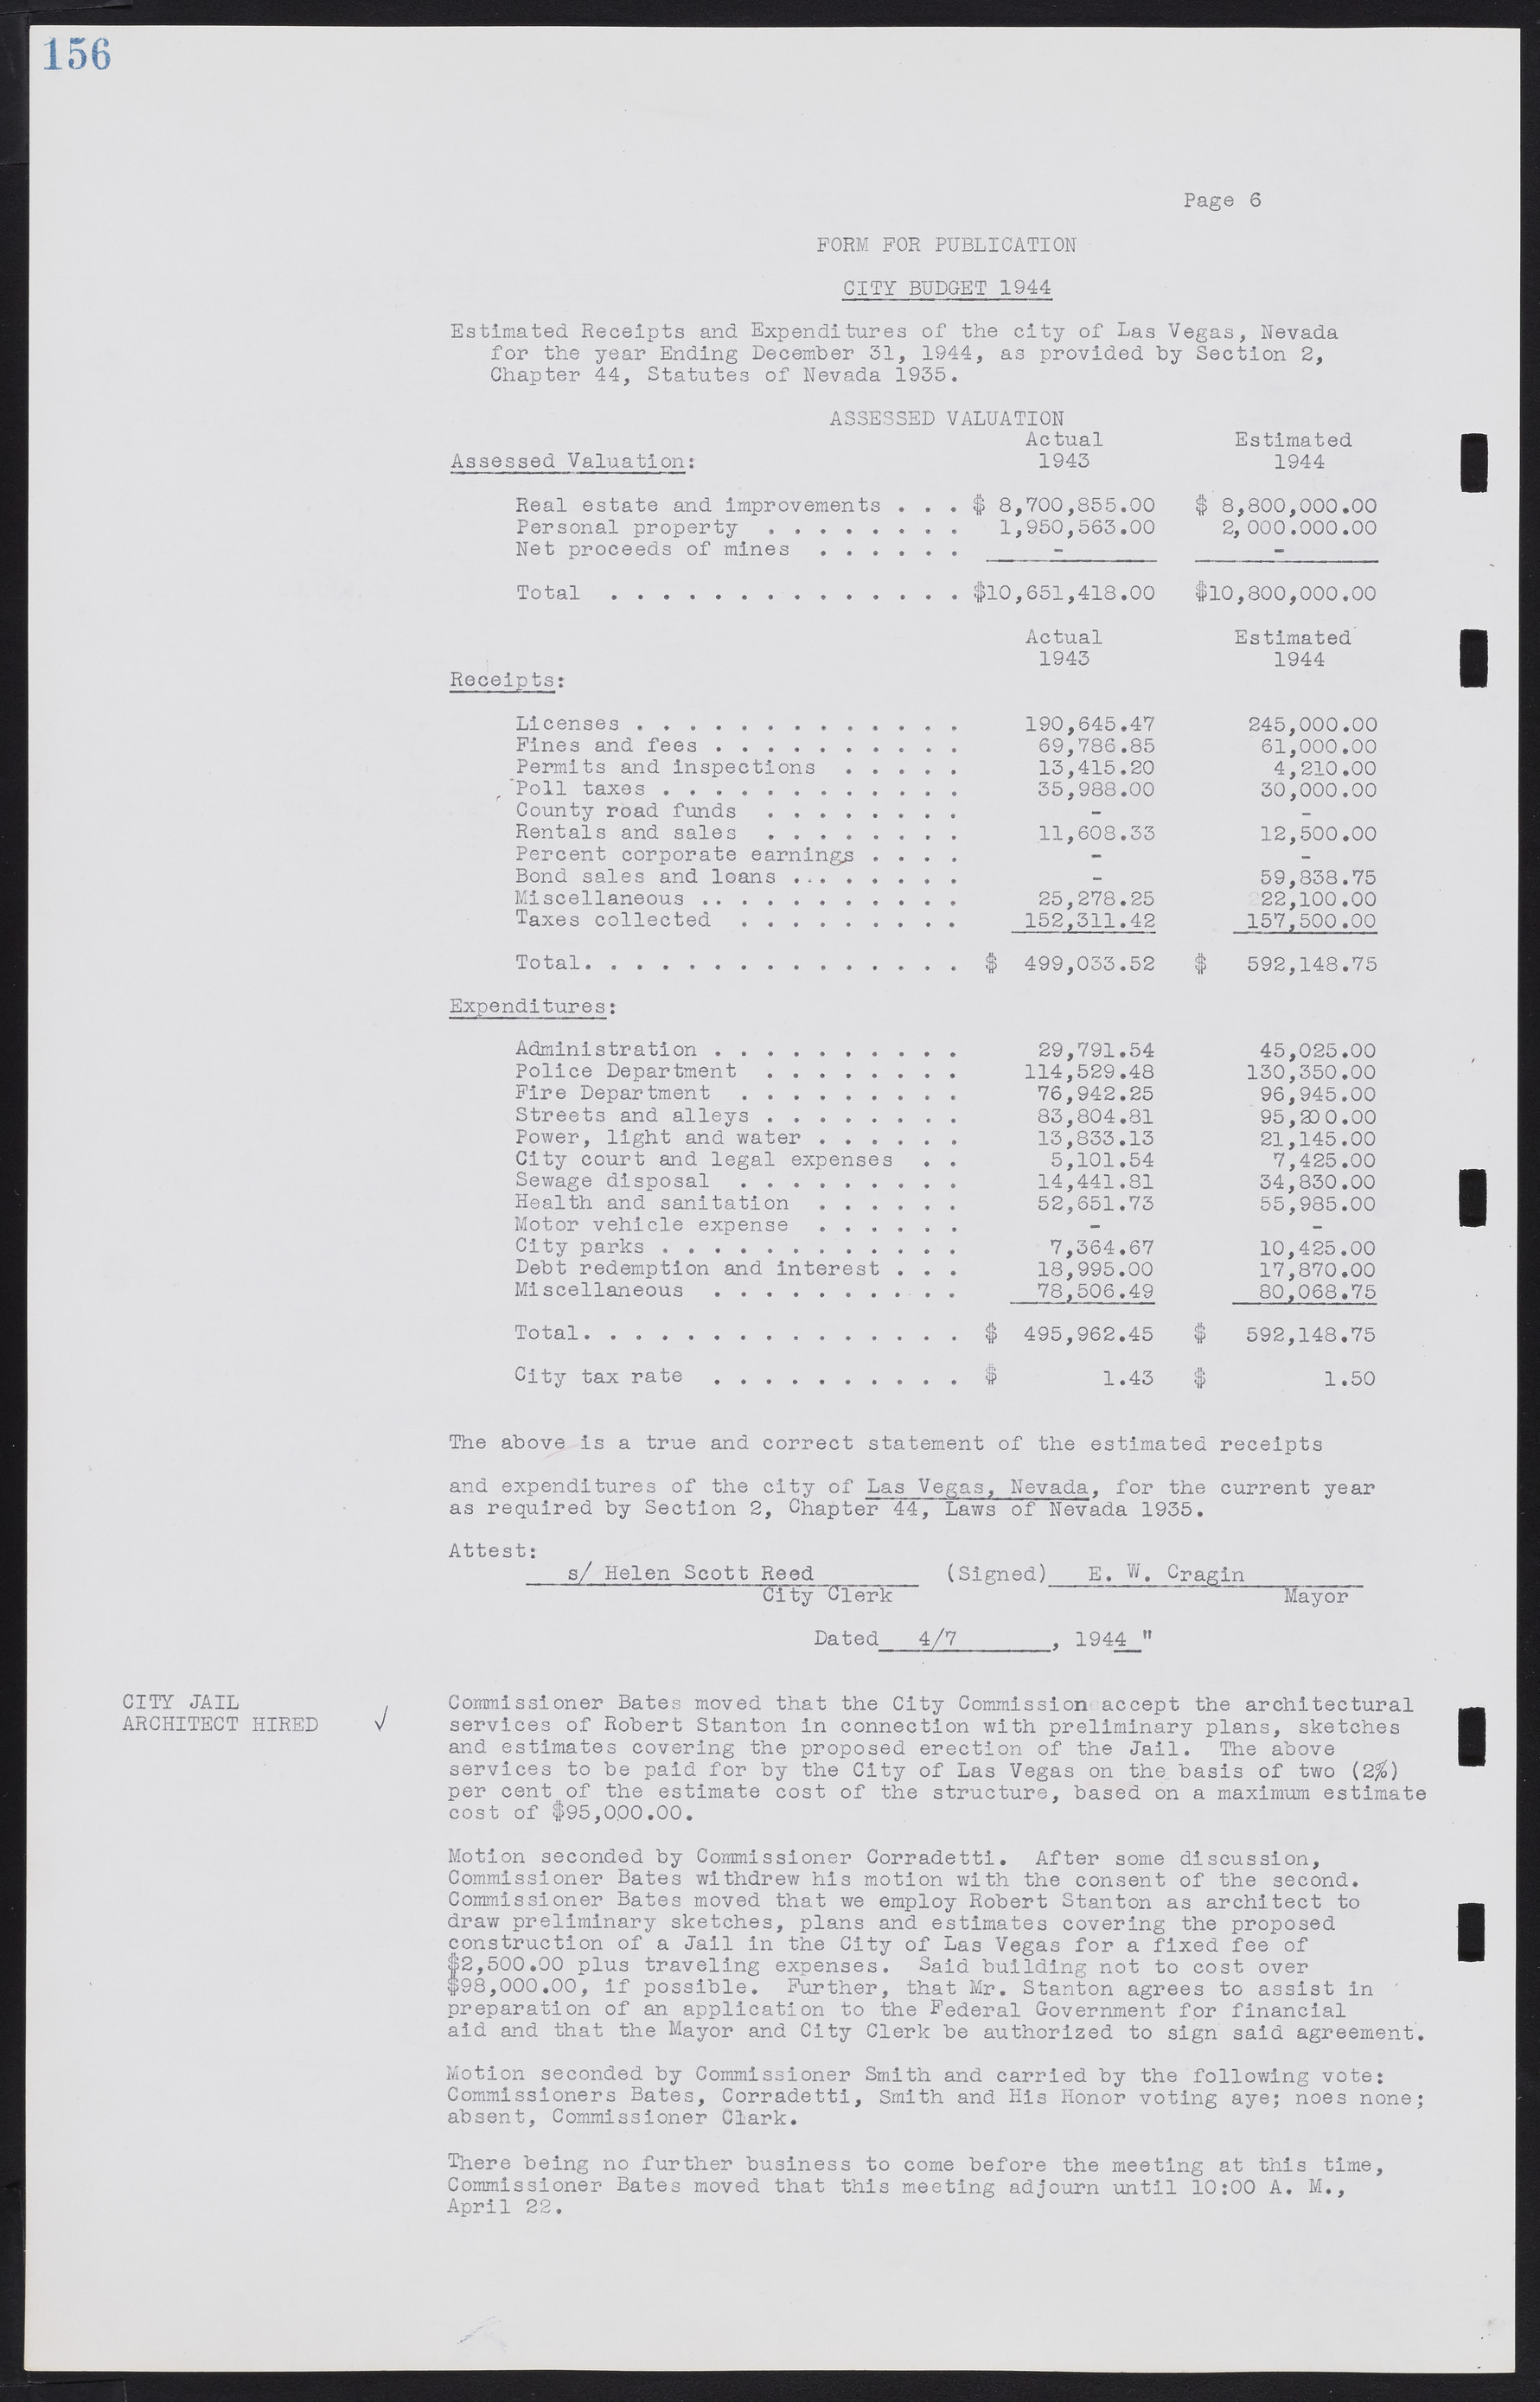 Las Vegas City Commission Minutes, August 11, 1942 to December 30, 1946, lvc000005-173